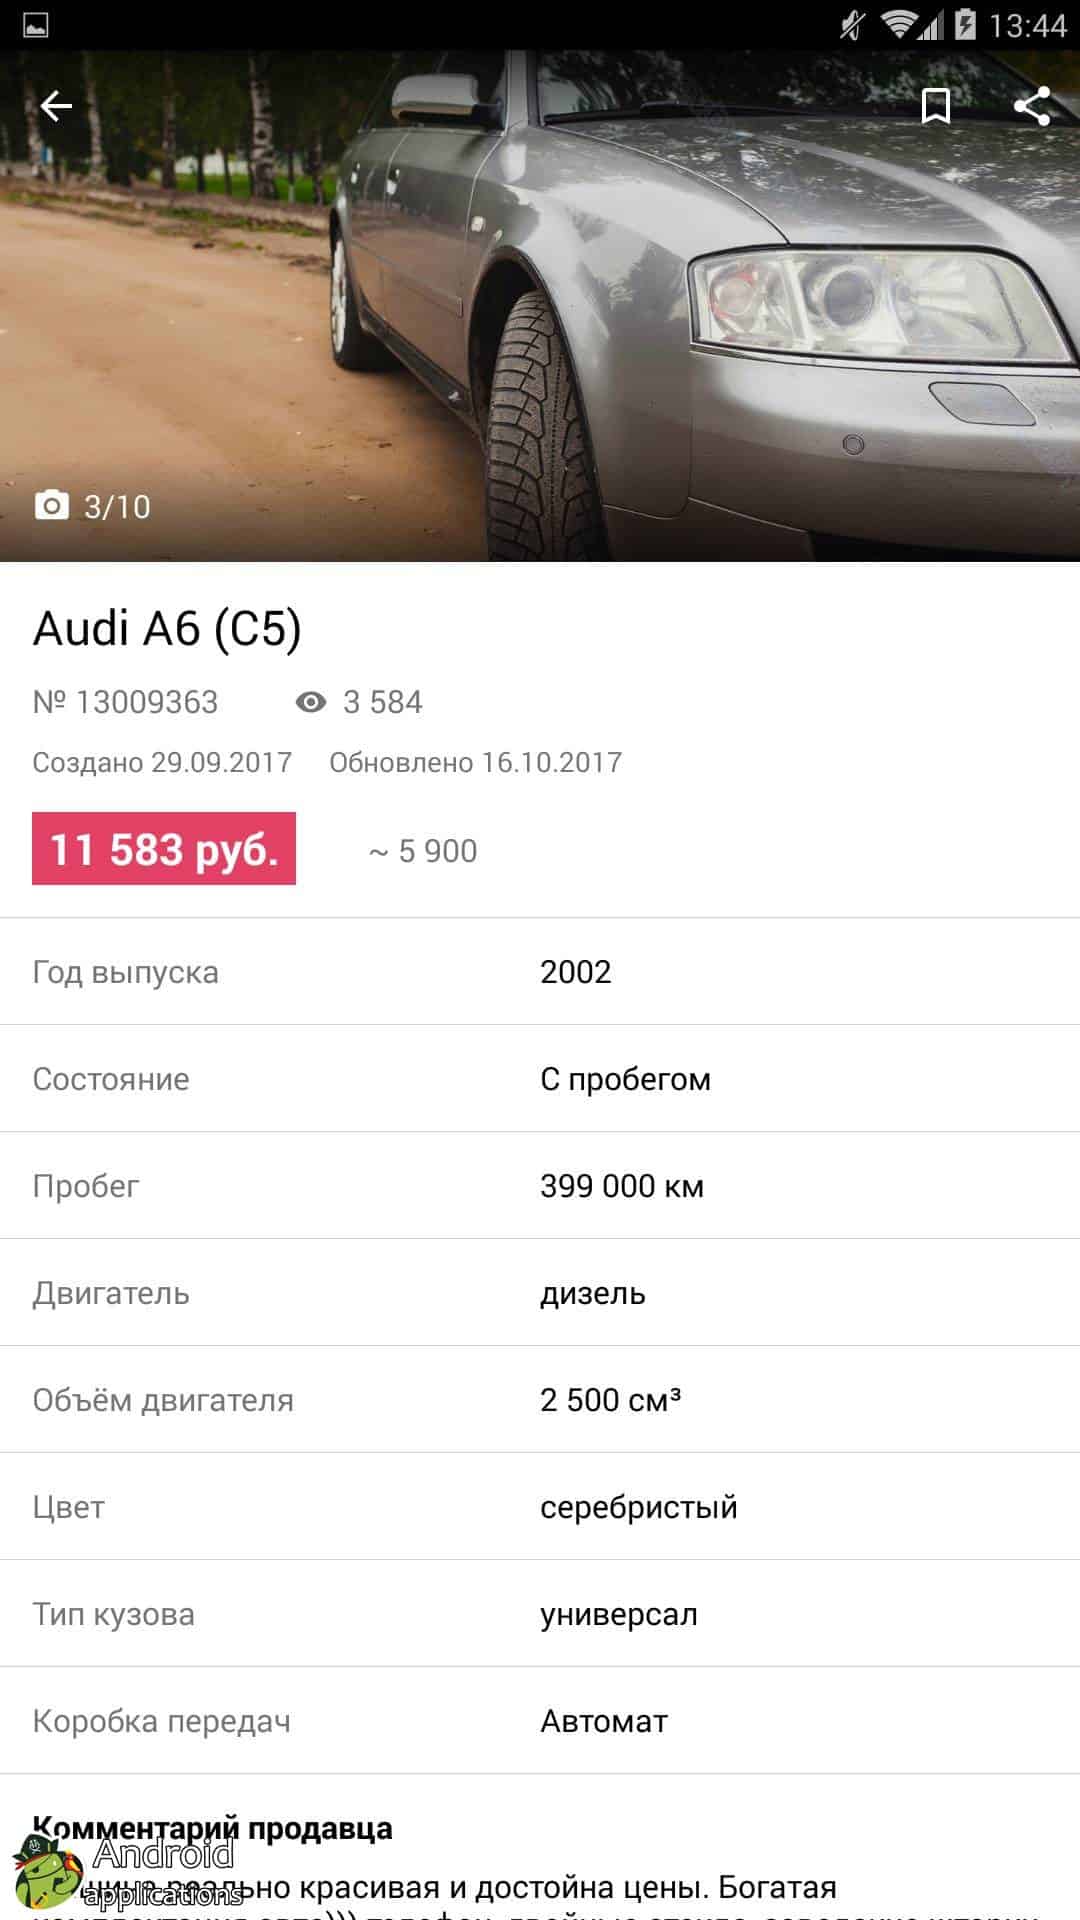 Ав бай купить автомобиль. Белорусские автомобильные сайты. Белорусские сайты авто. АВ бай. Баи автомобиль.